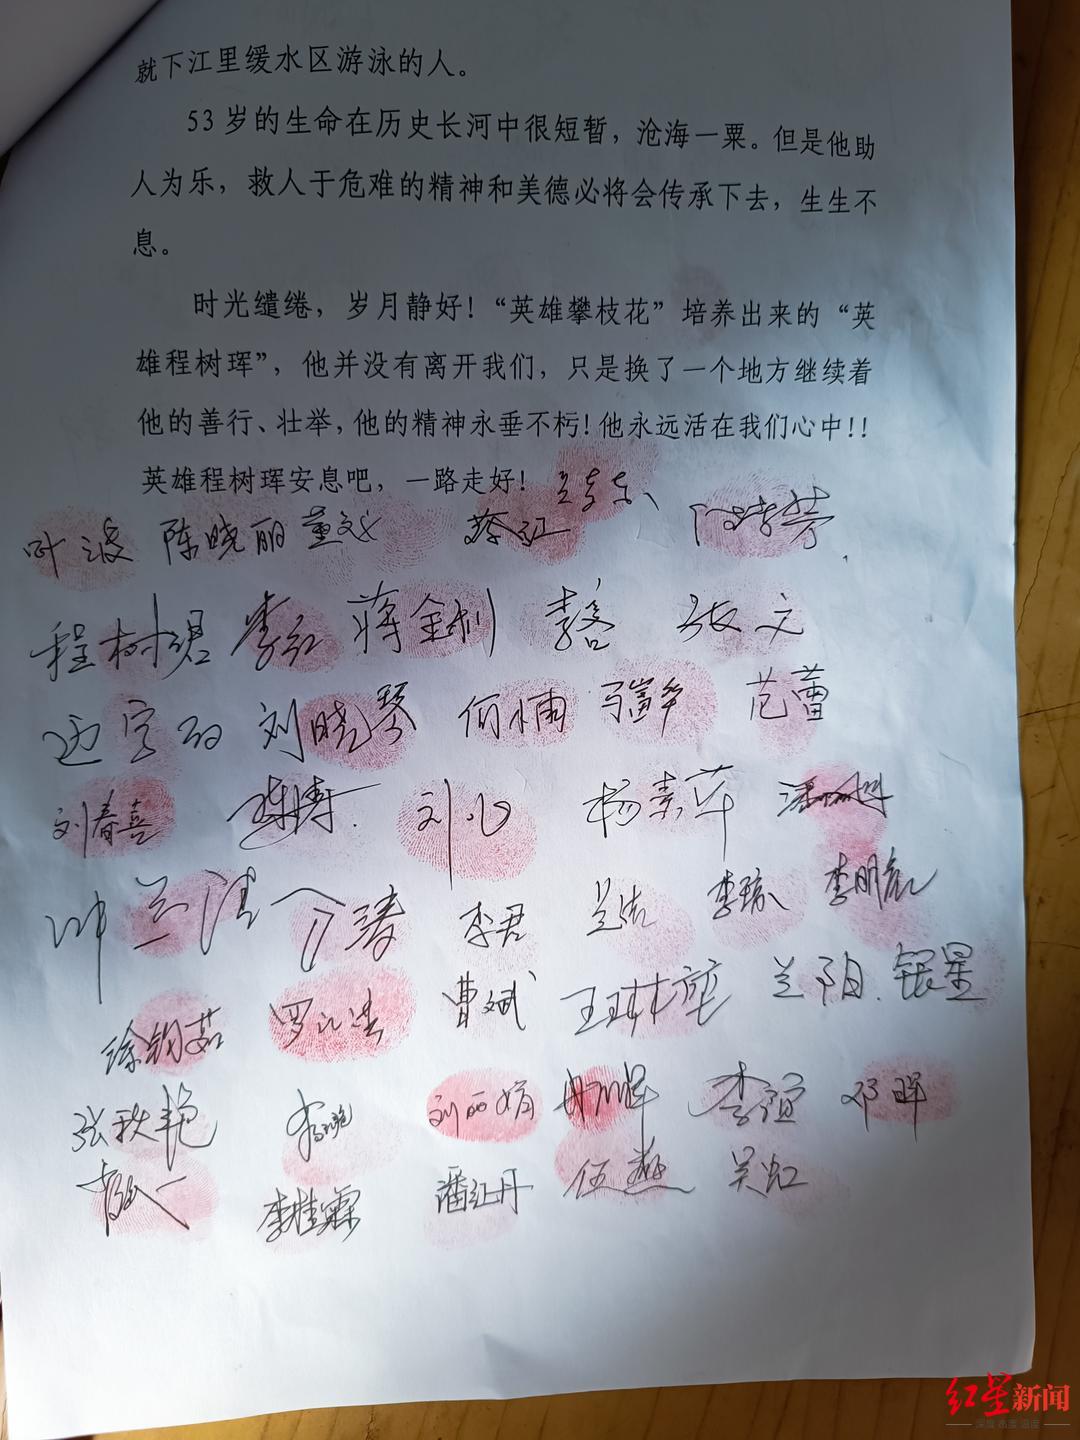 35岁体育老师跳江救人遇难 孩子一直在岸上喊爸爸-搜狐大视野-搜狐新闻